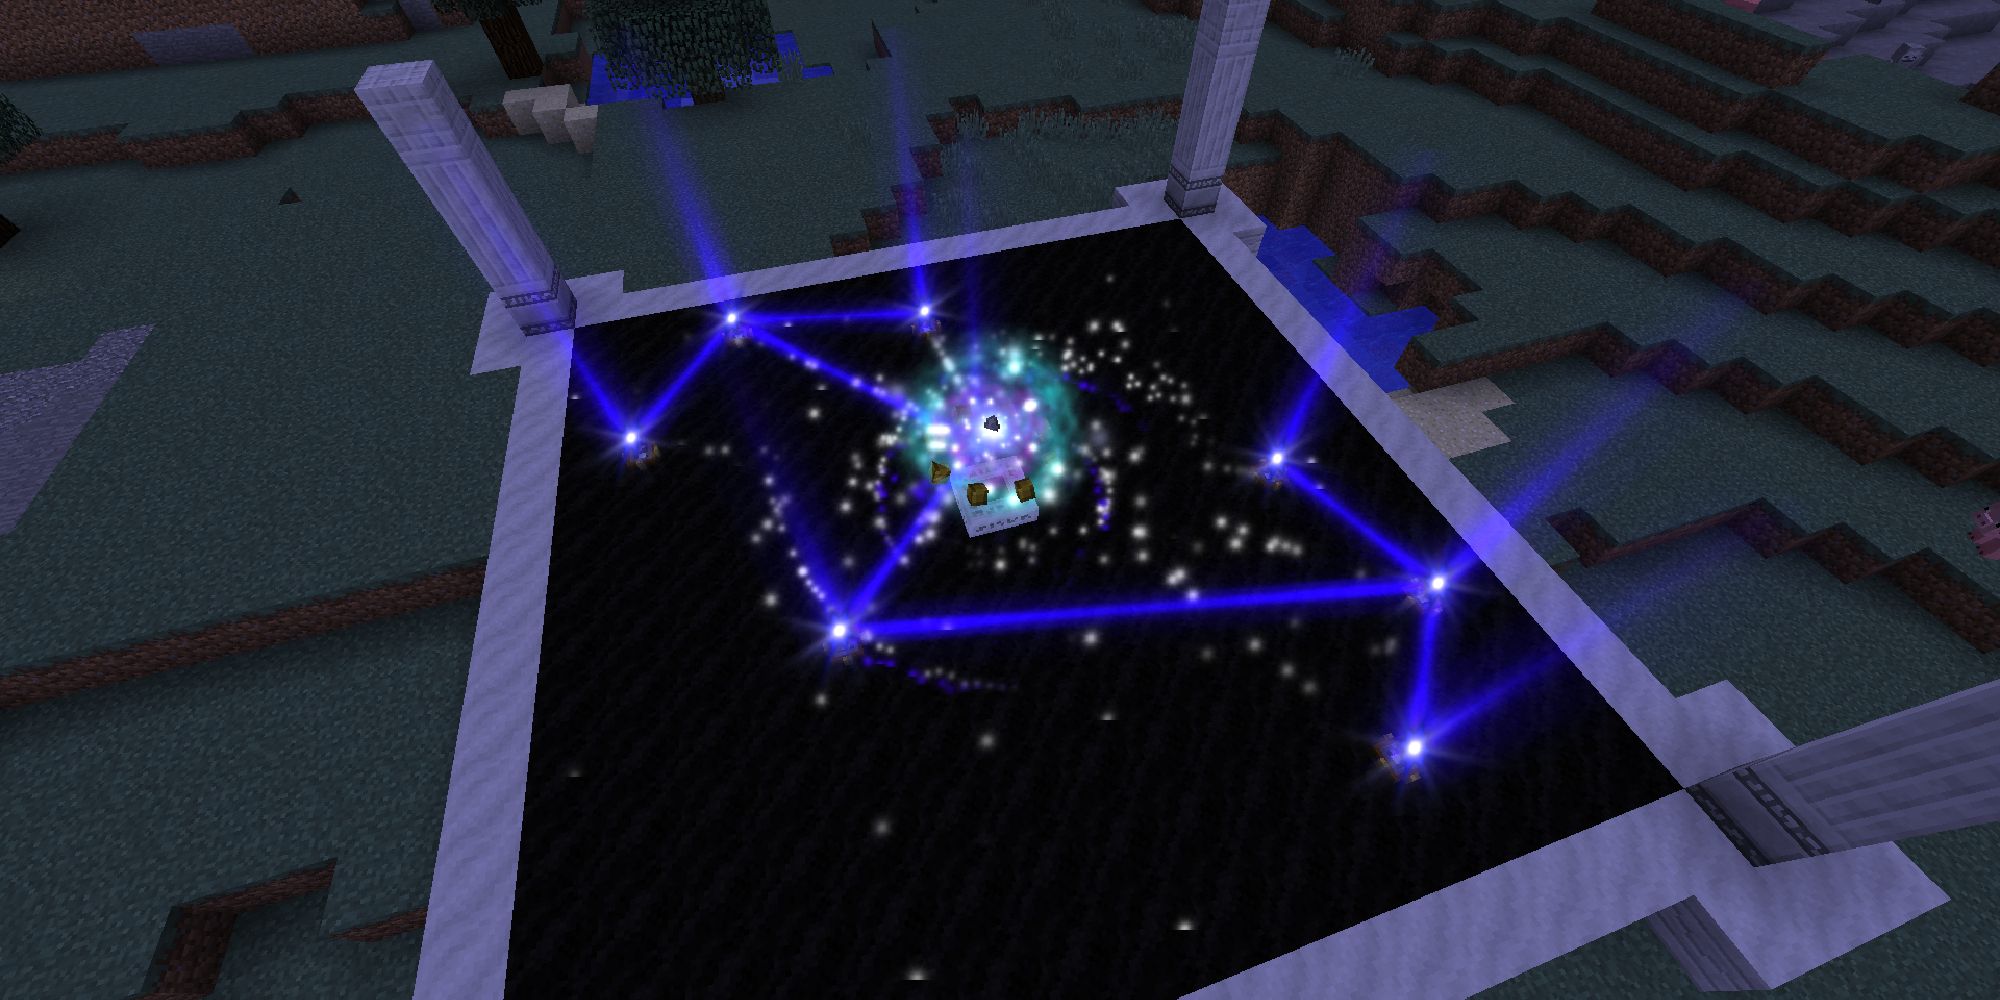 minecraft astral sorcery mod with constellation being created on dark platform